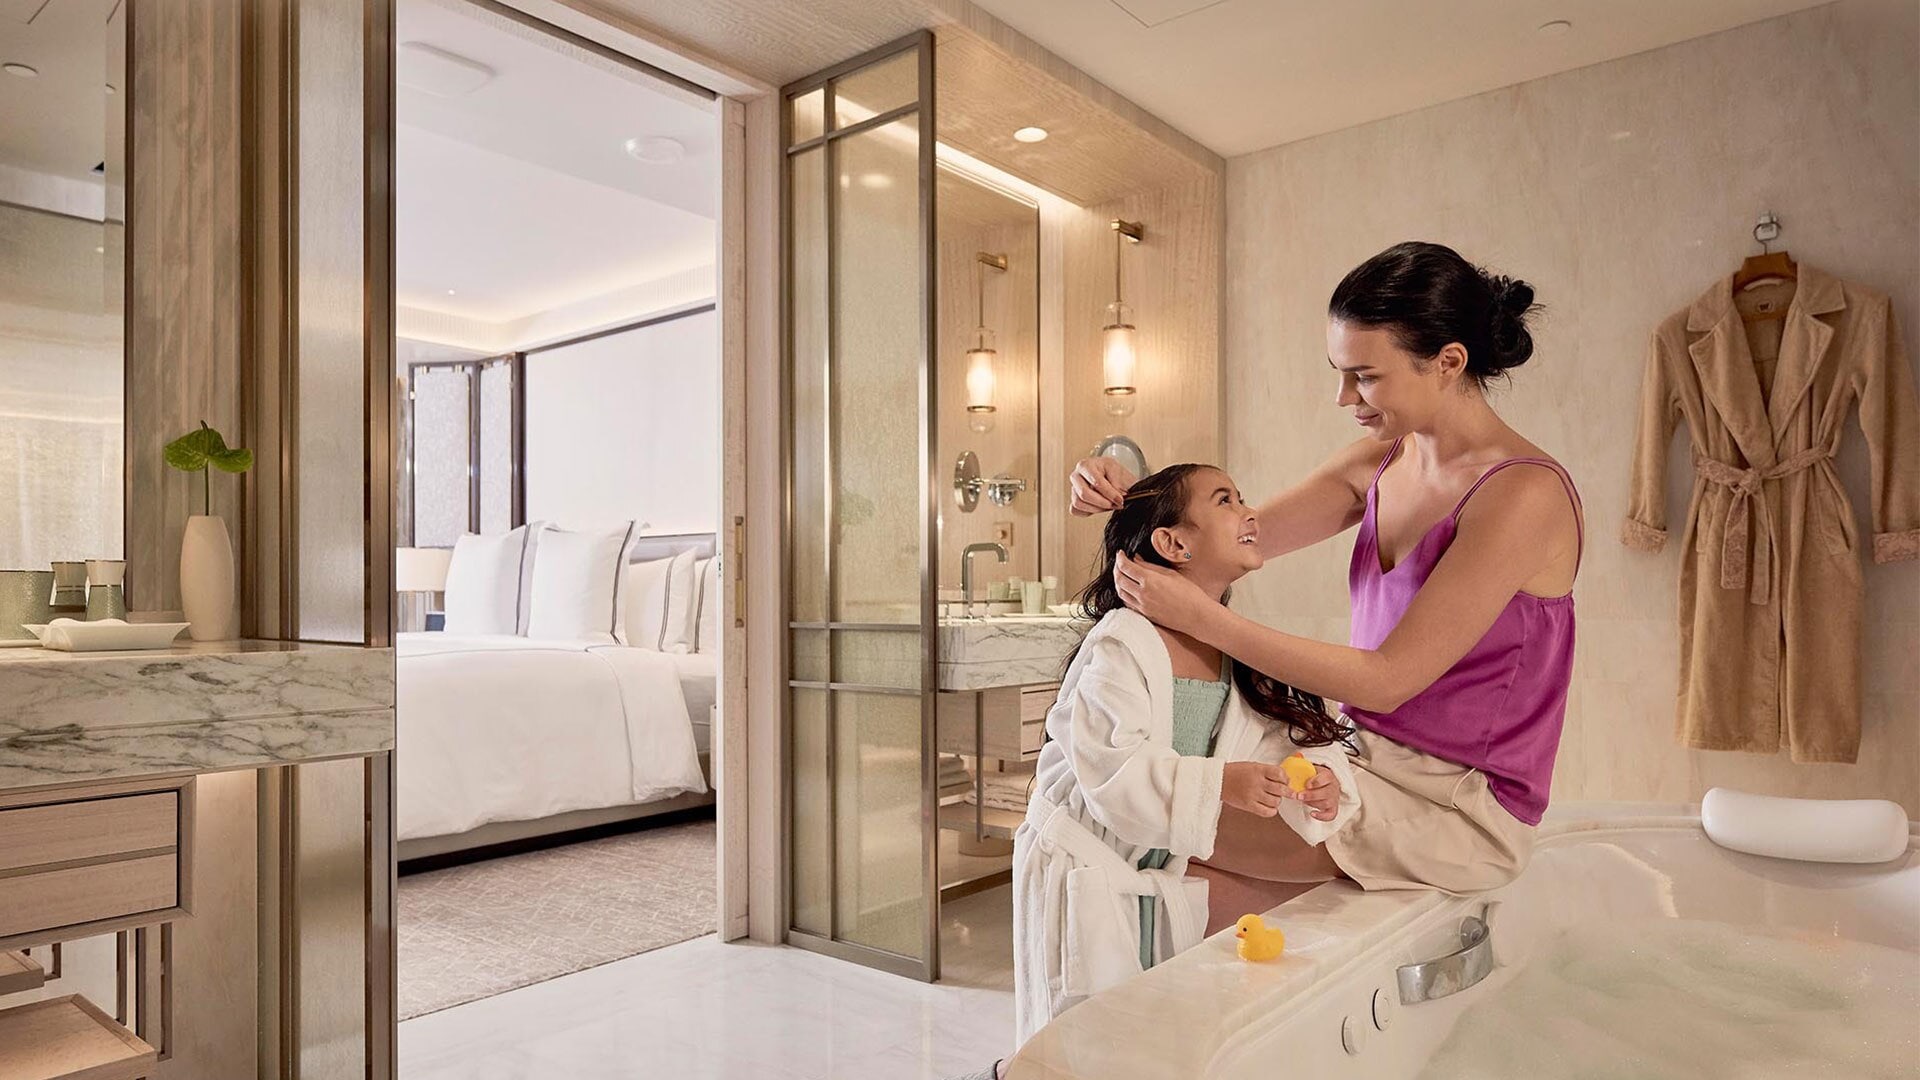 シンガポールのホテルのファミリールーム「サンズ・ファミリースイート」のバスルームにいる母と娘